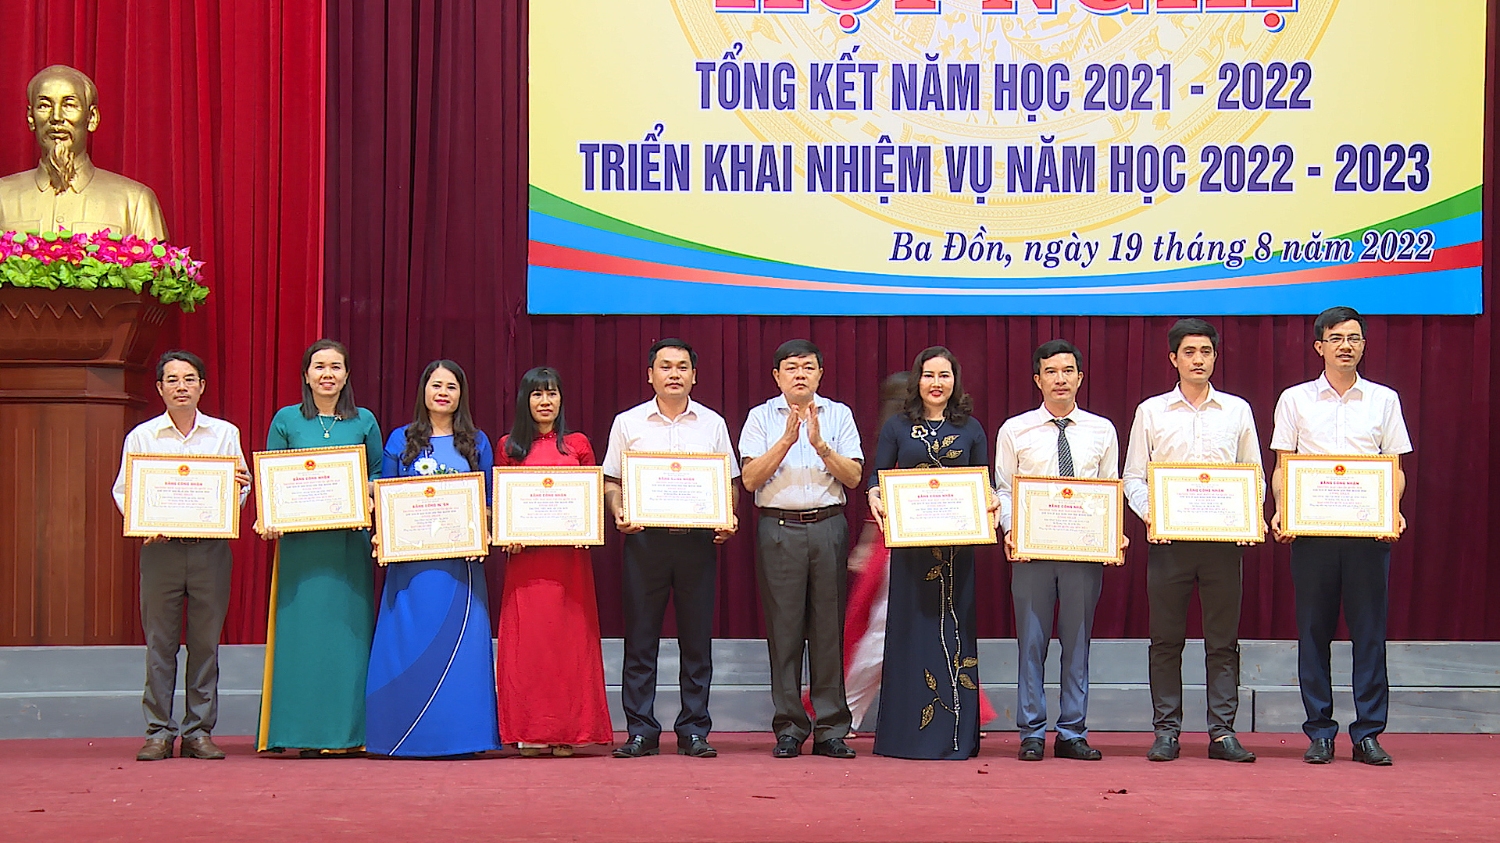 09 trường học được nhận Bằng Công nhận trường học đạt chuẩn Quốc gia trong năm 2021